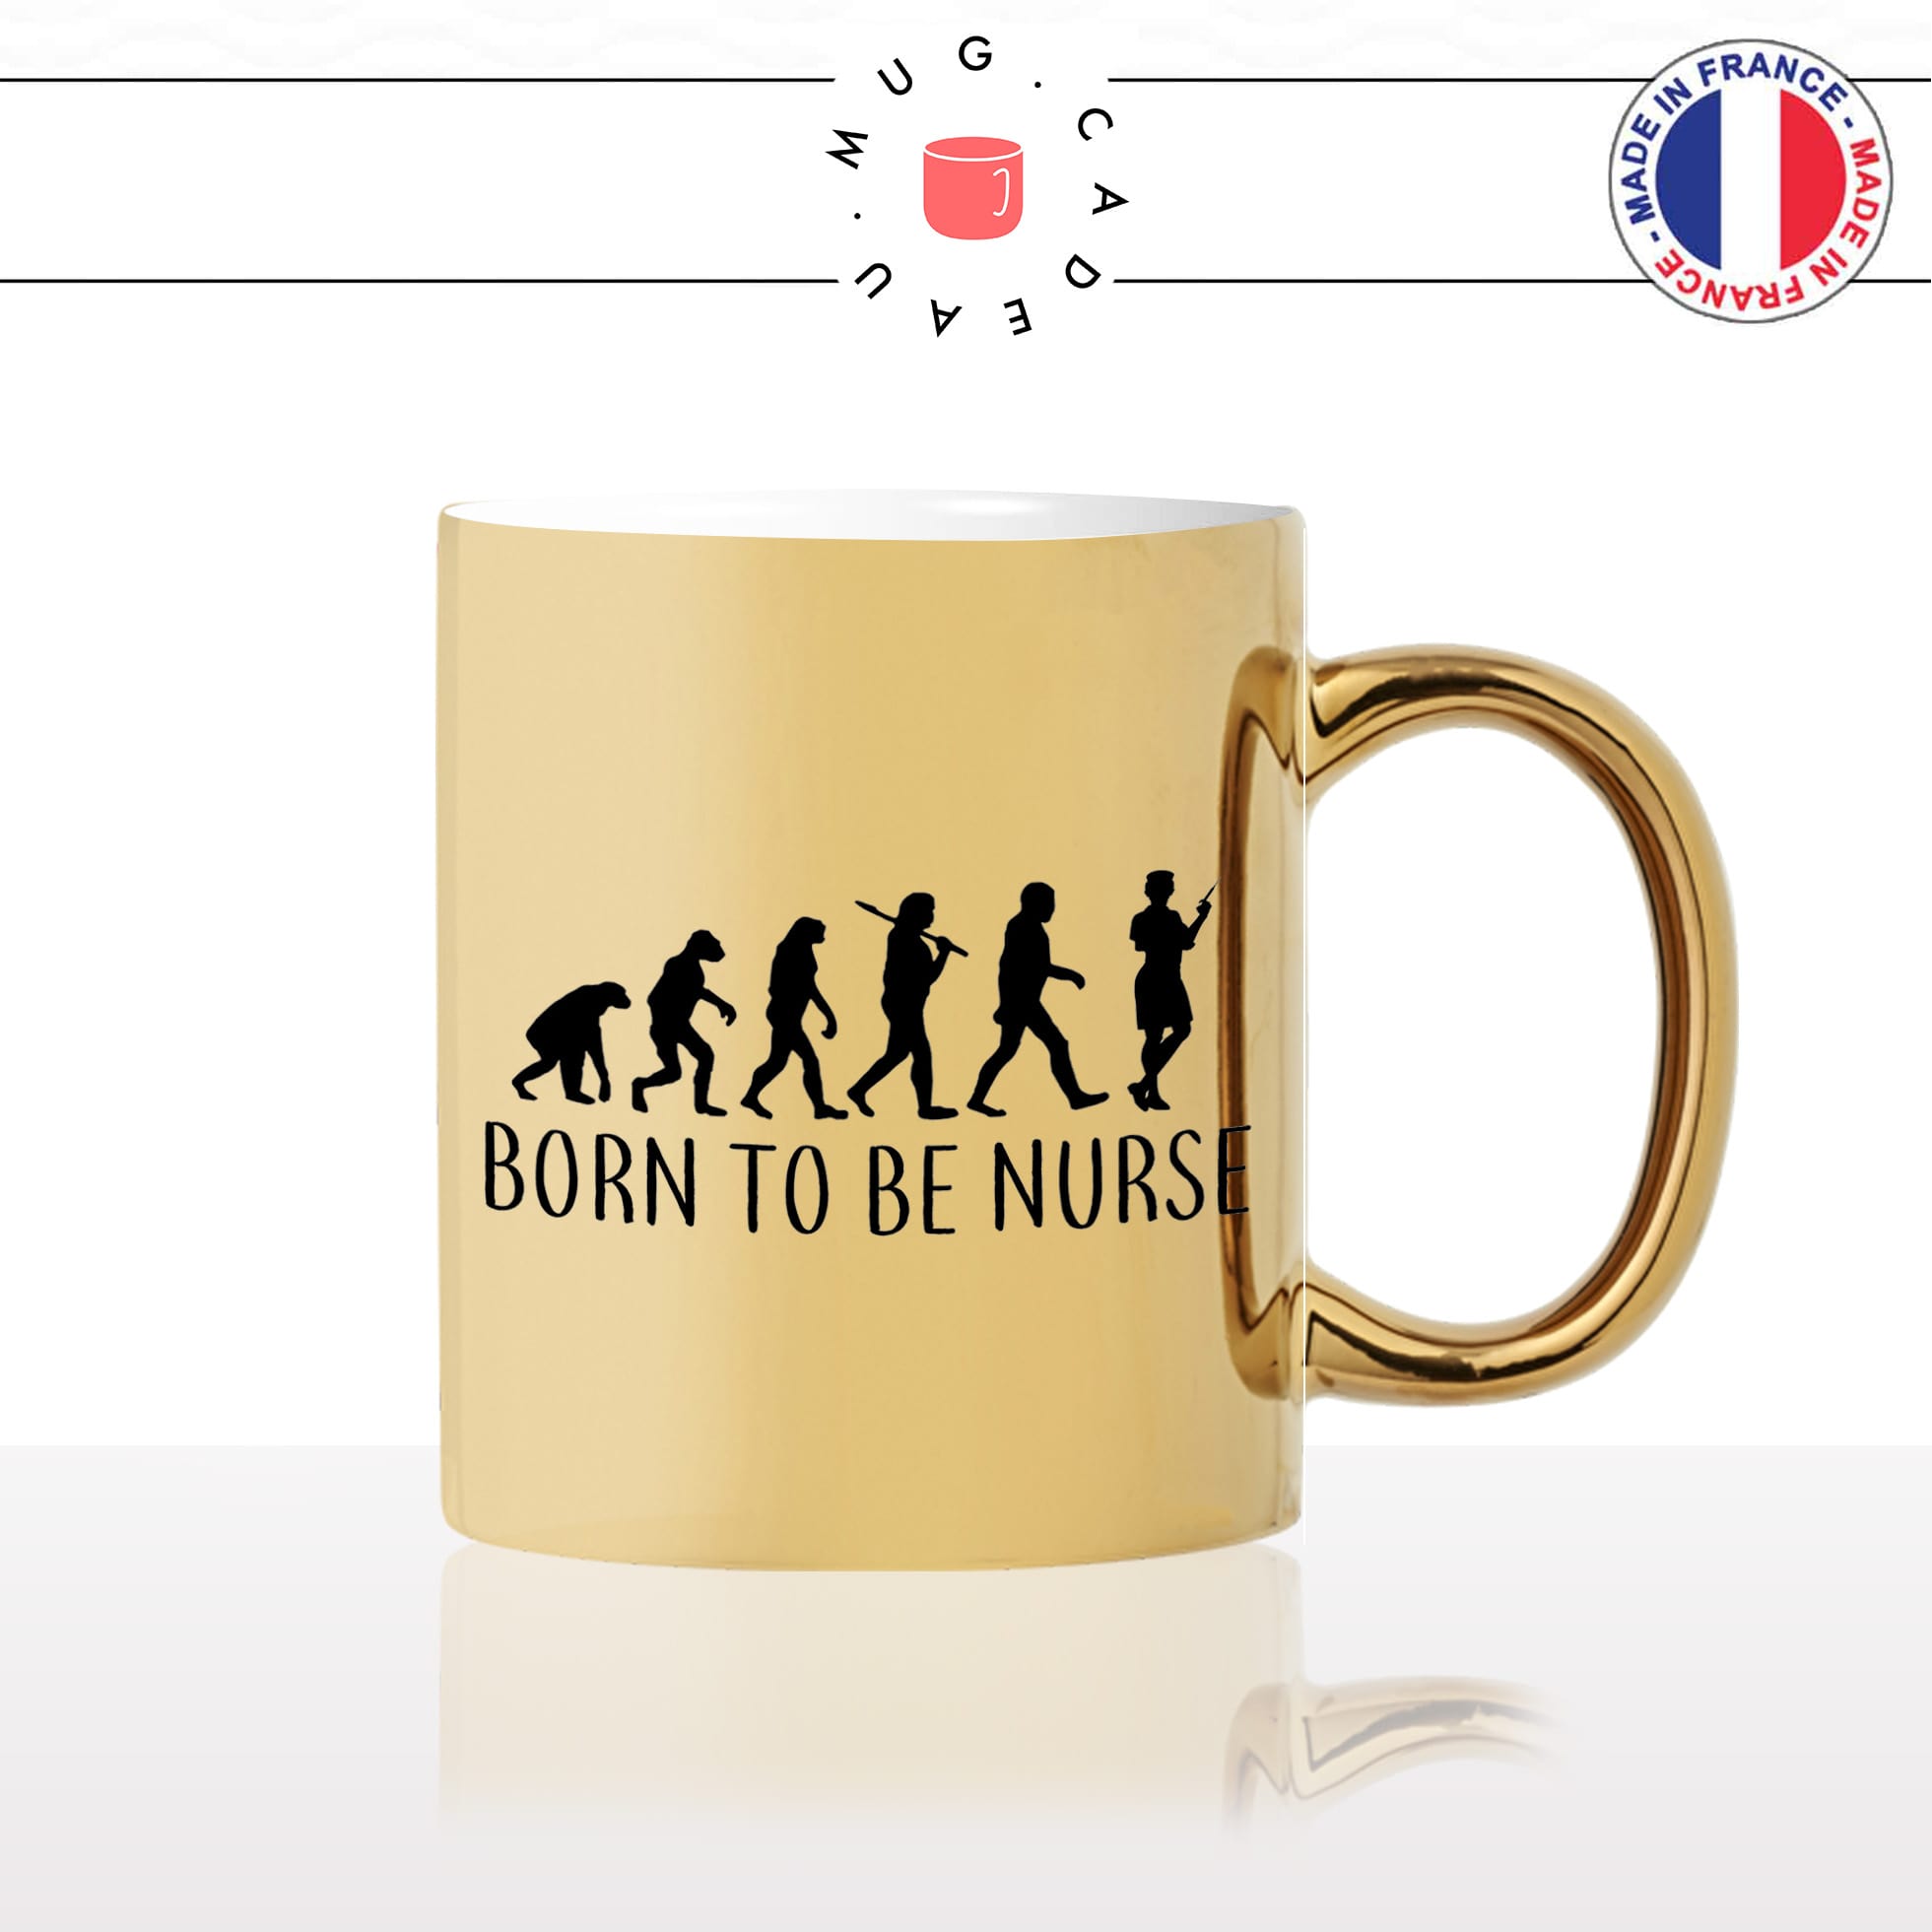 mug-tasse-or-doré-gold-born-to-be-nurse-infirmiere-evolution-humaine-métier-femme-prehistoire-cool-idée-cadeau-fun-café-thé-personnalisé2-min